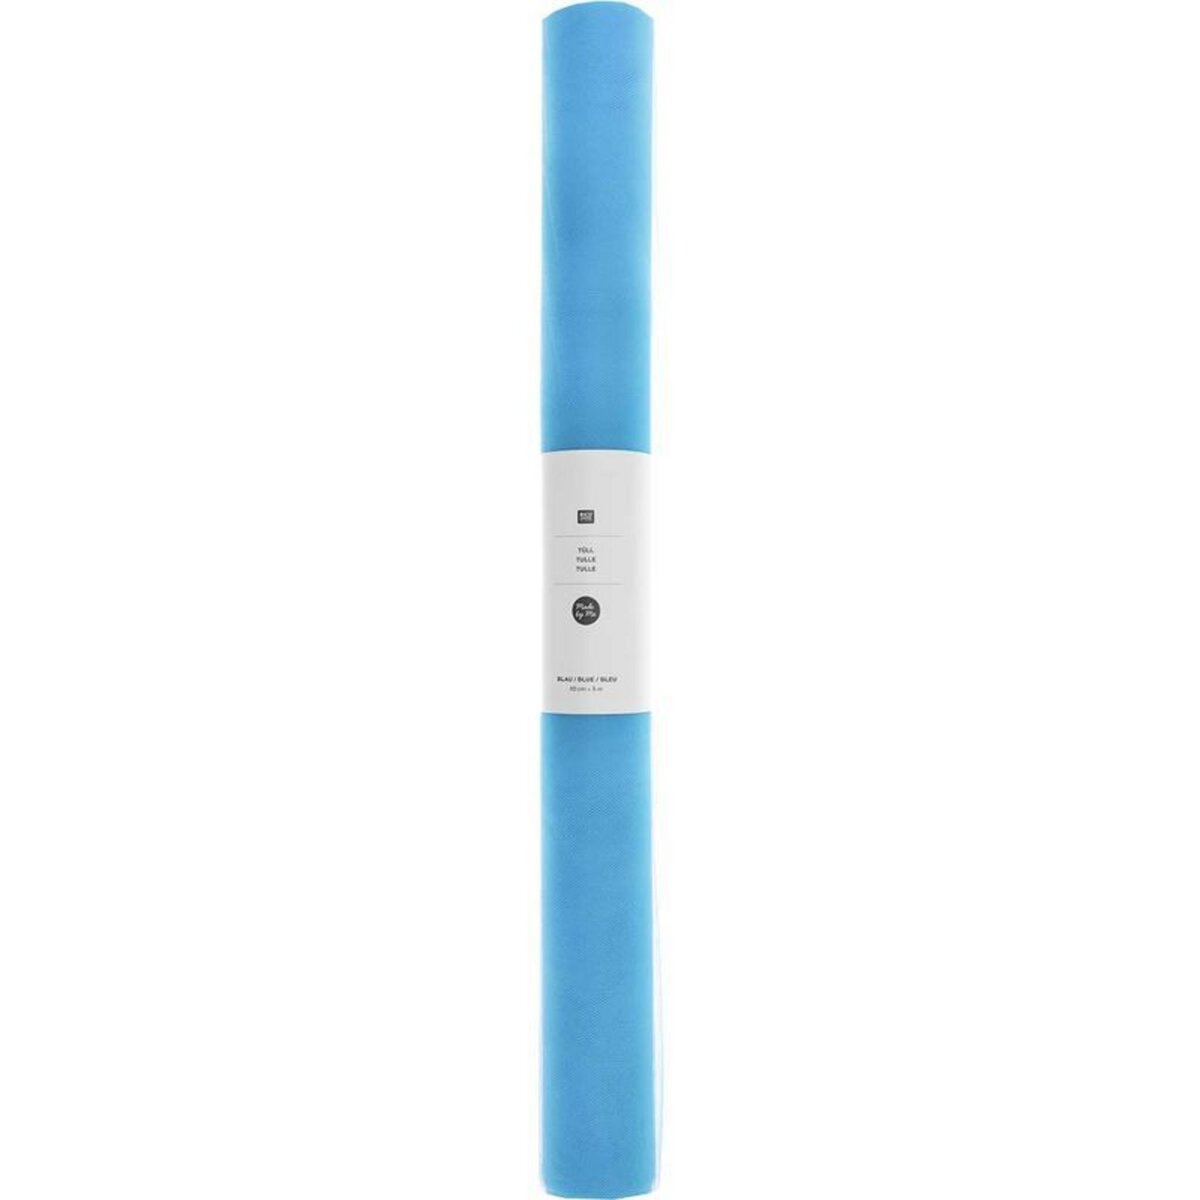 RICO DESIGN Rouleau de tulle 50 cm x 5 m - bleu